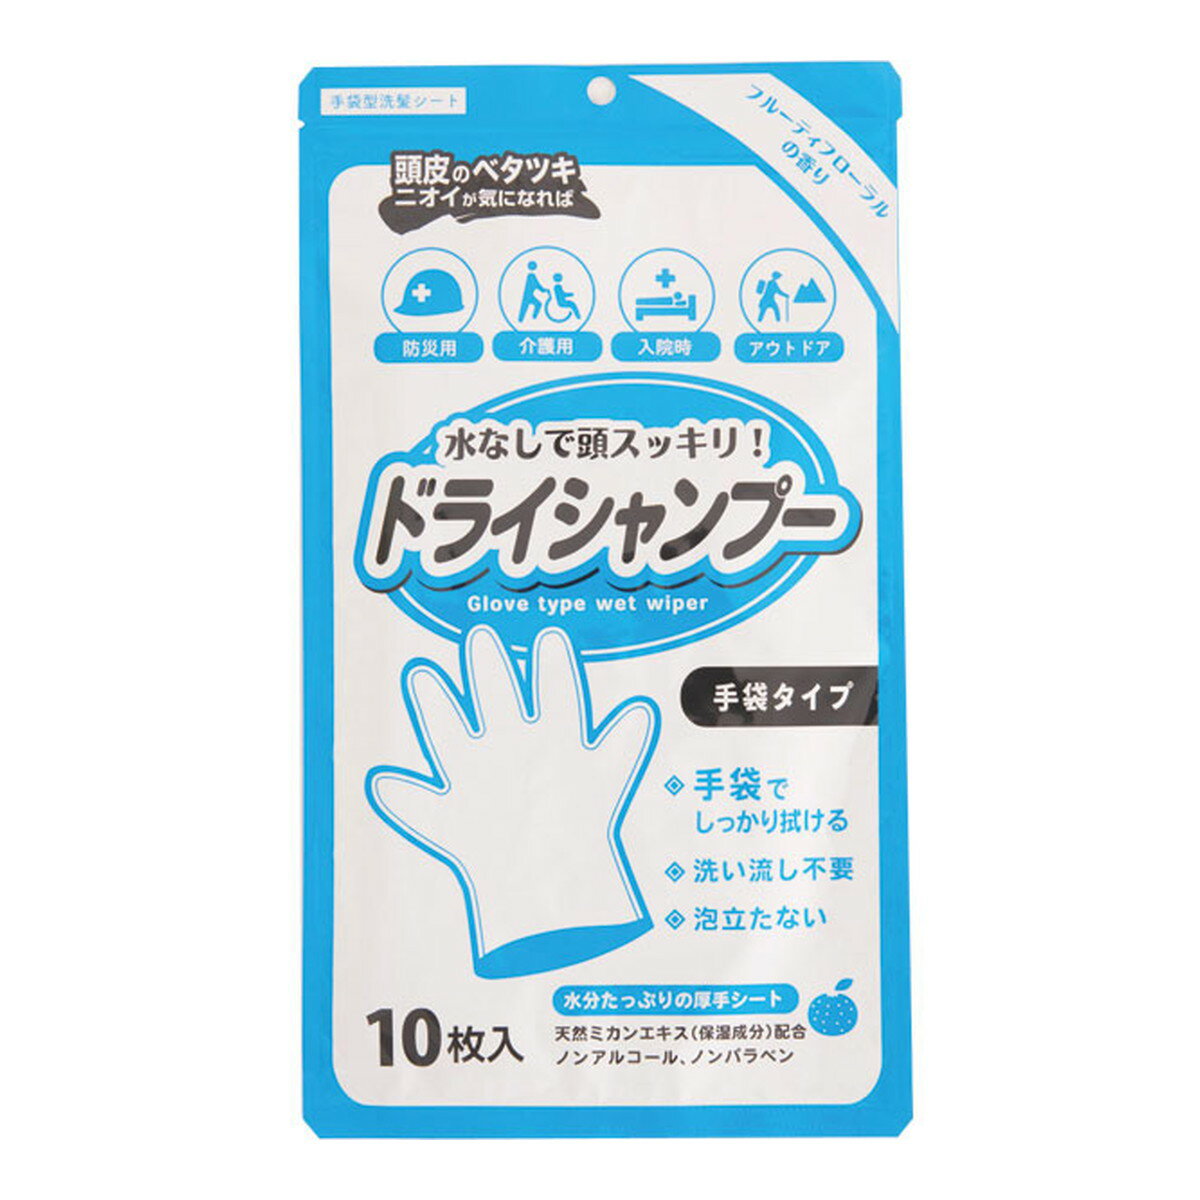 本田洋行 シャンプー手袋 フルーティフローラルの香り 10枚入 ドライシャンプー 手袋型洗髪シート